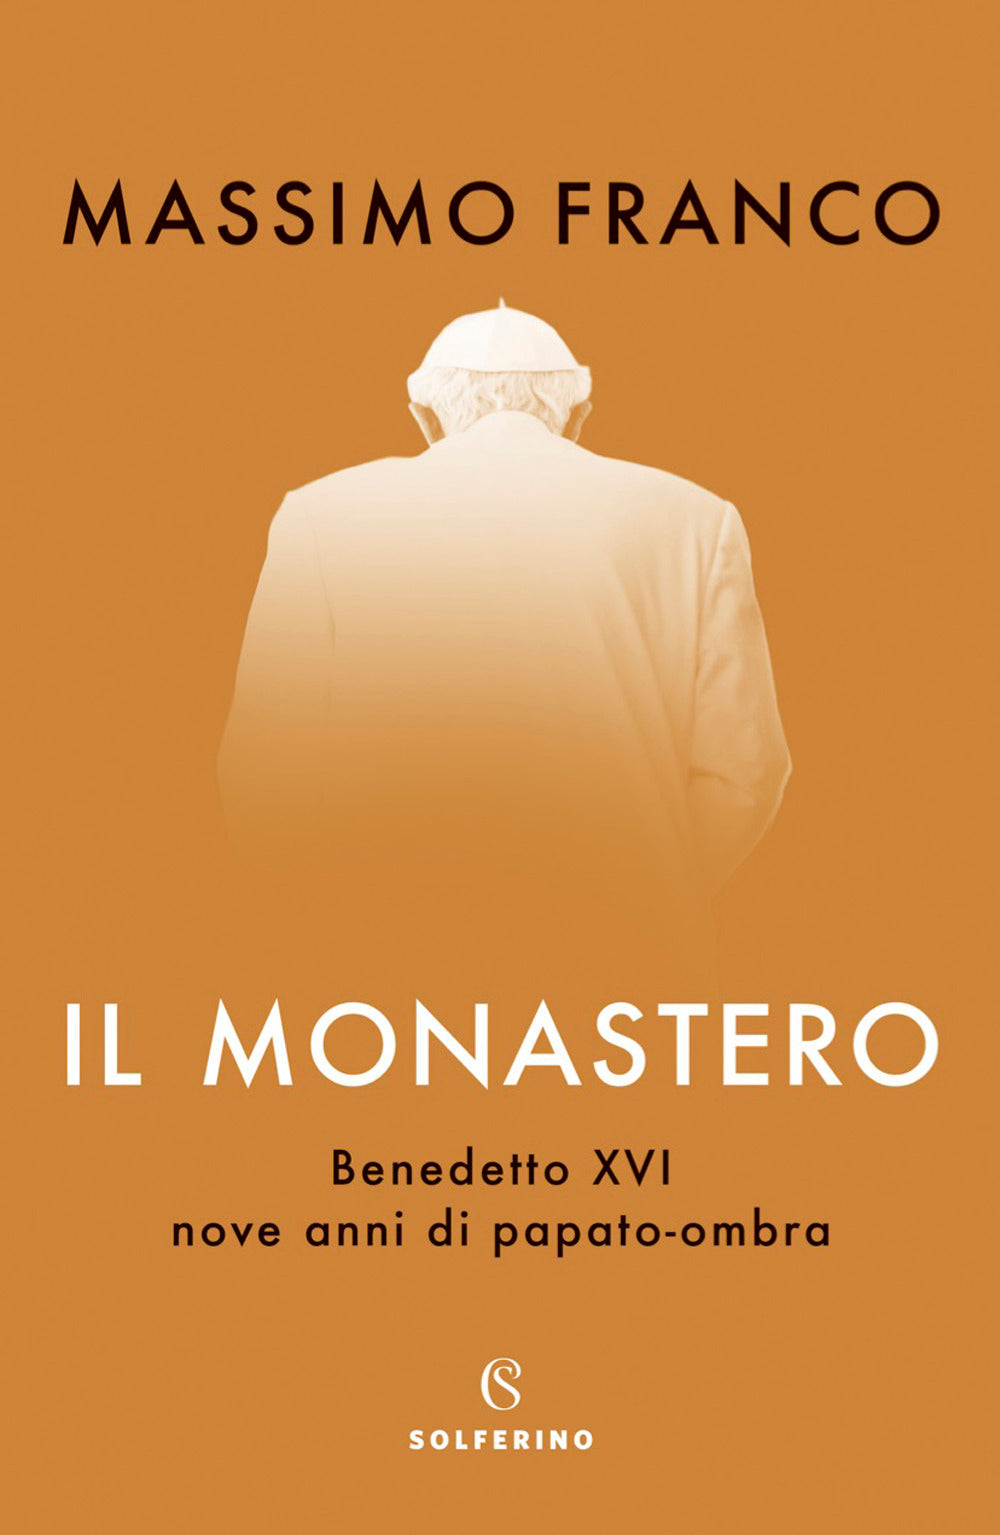 Il monastero. Benedetto XVI, nove anni di papato-ombra.